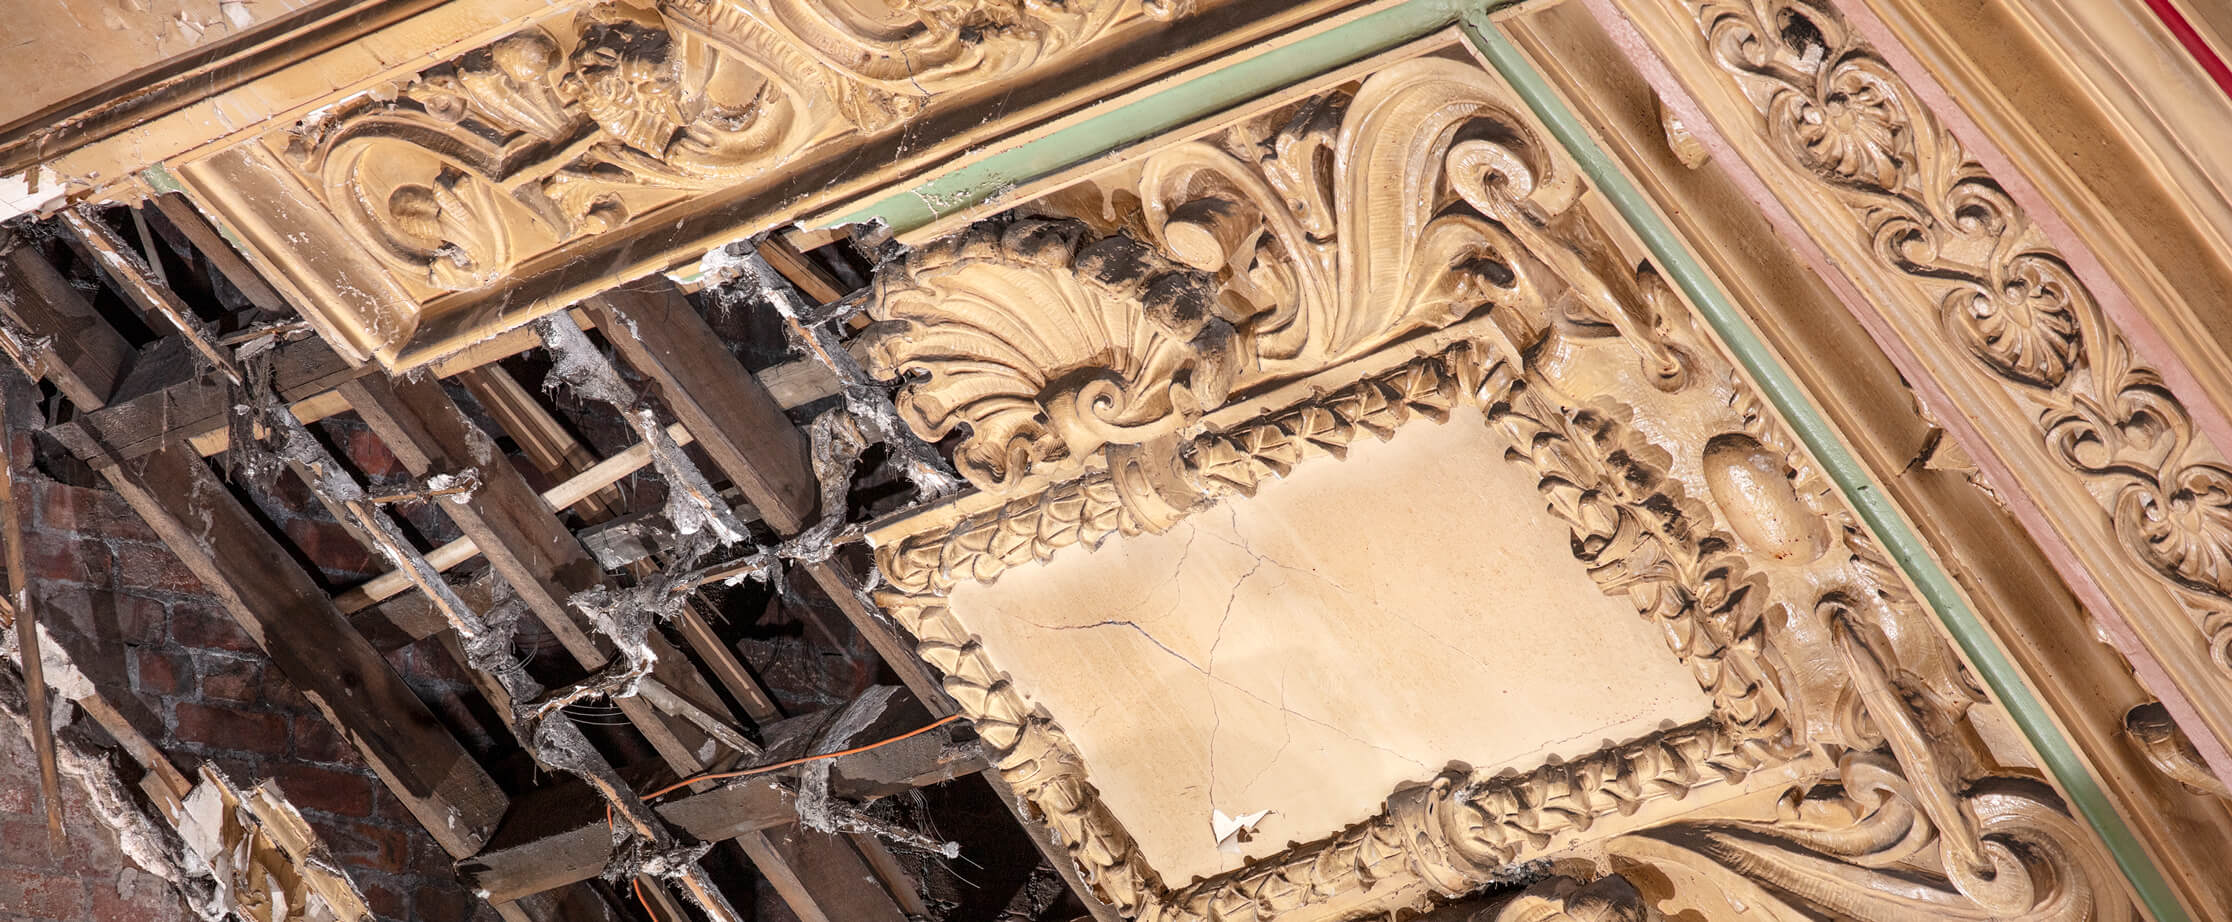 Detail of damaged plasterwork ceiling moulding.